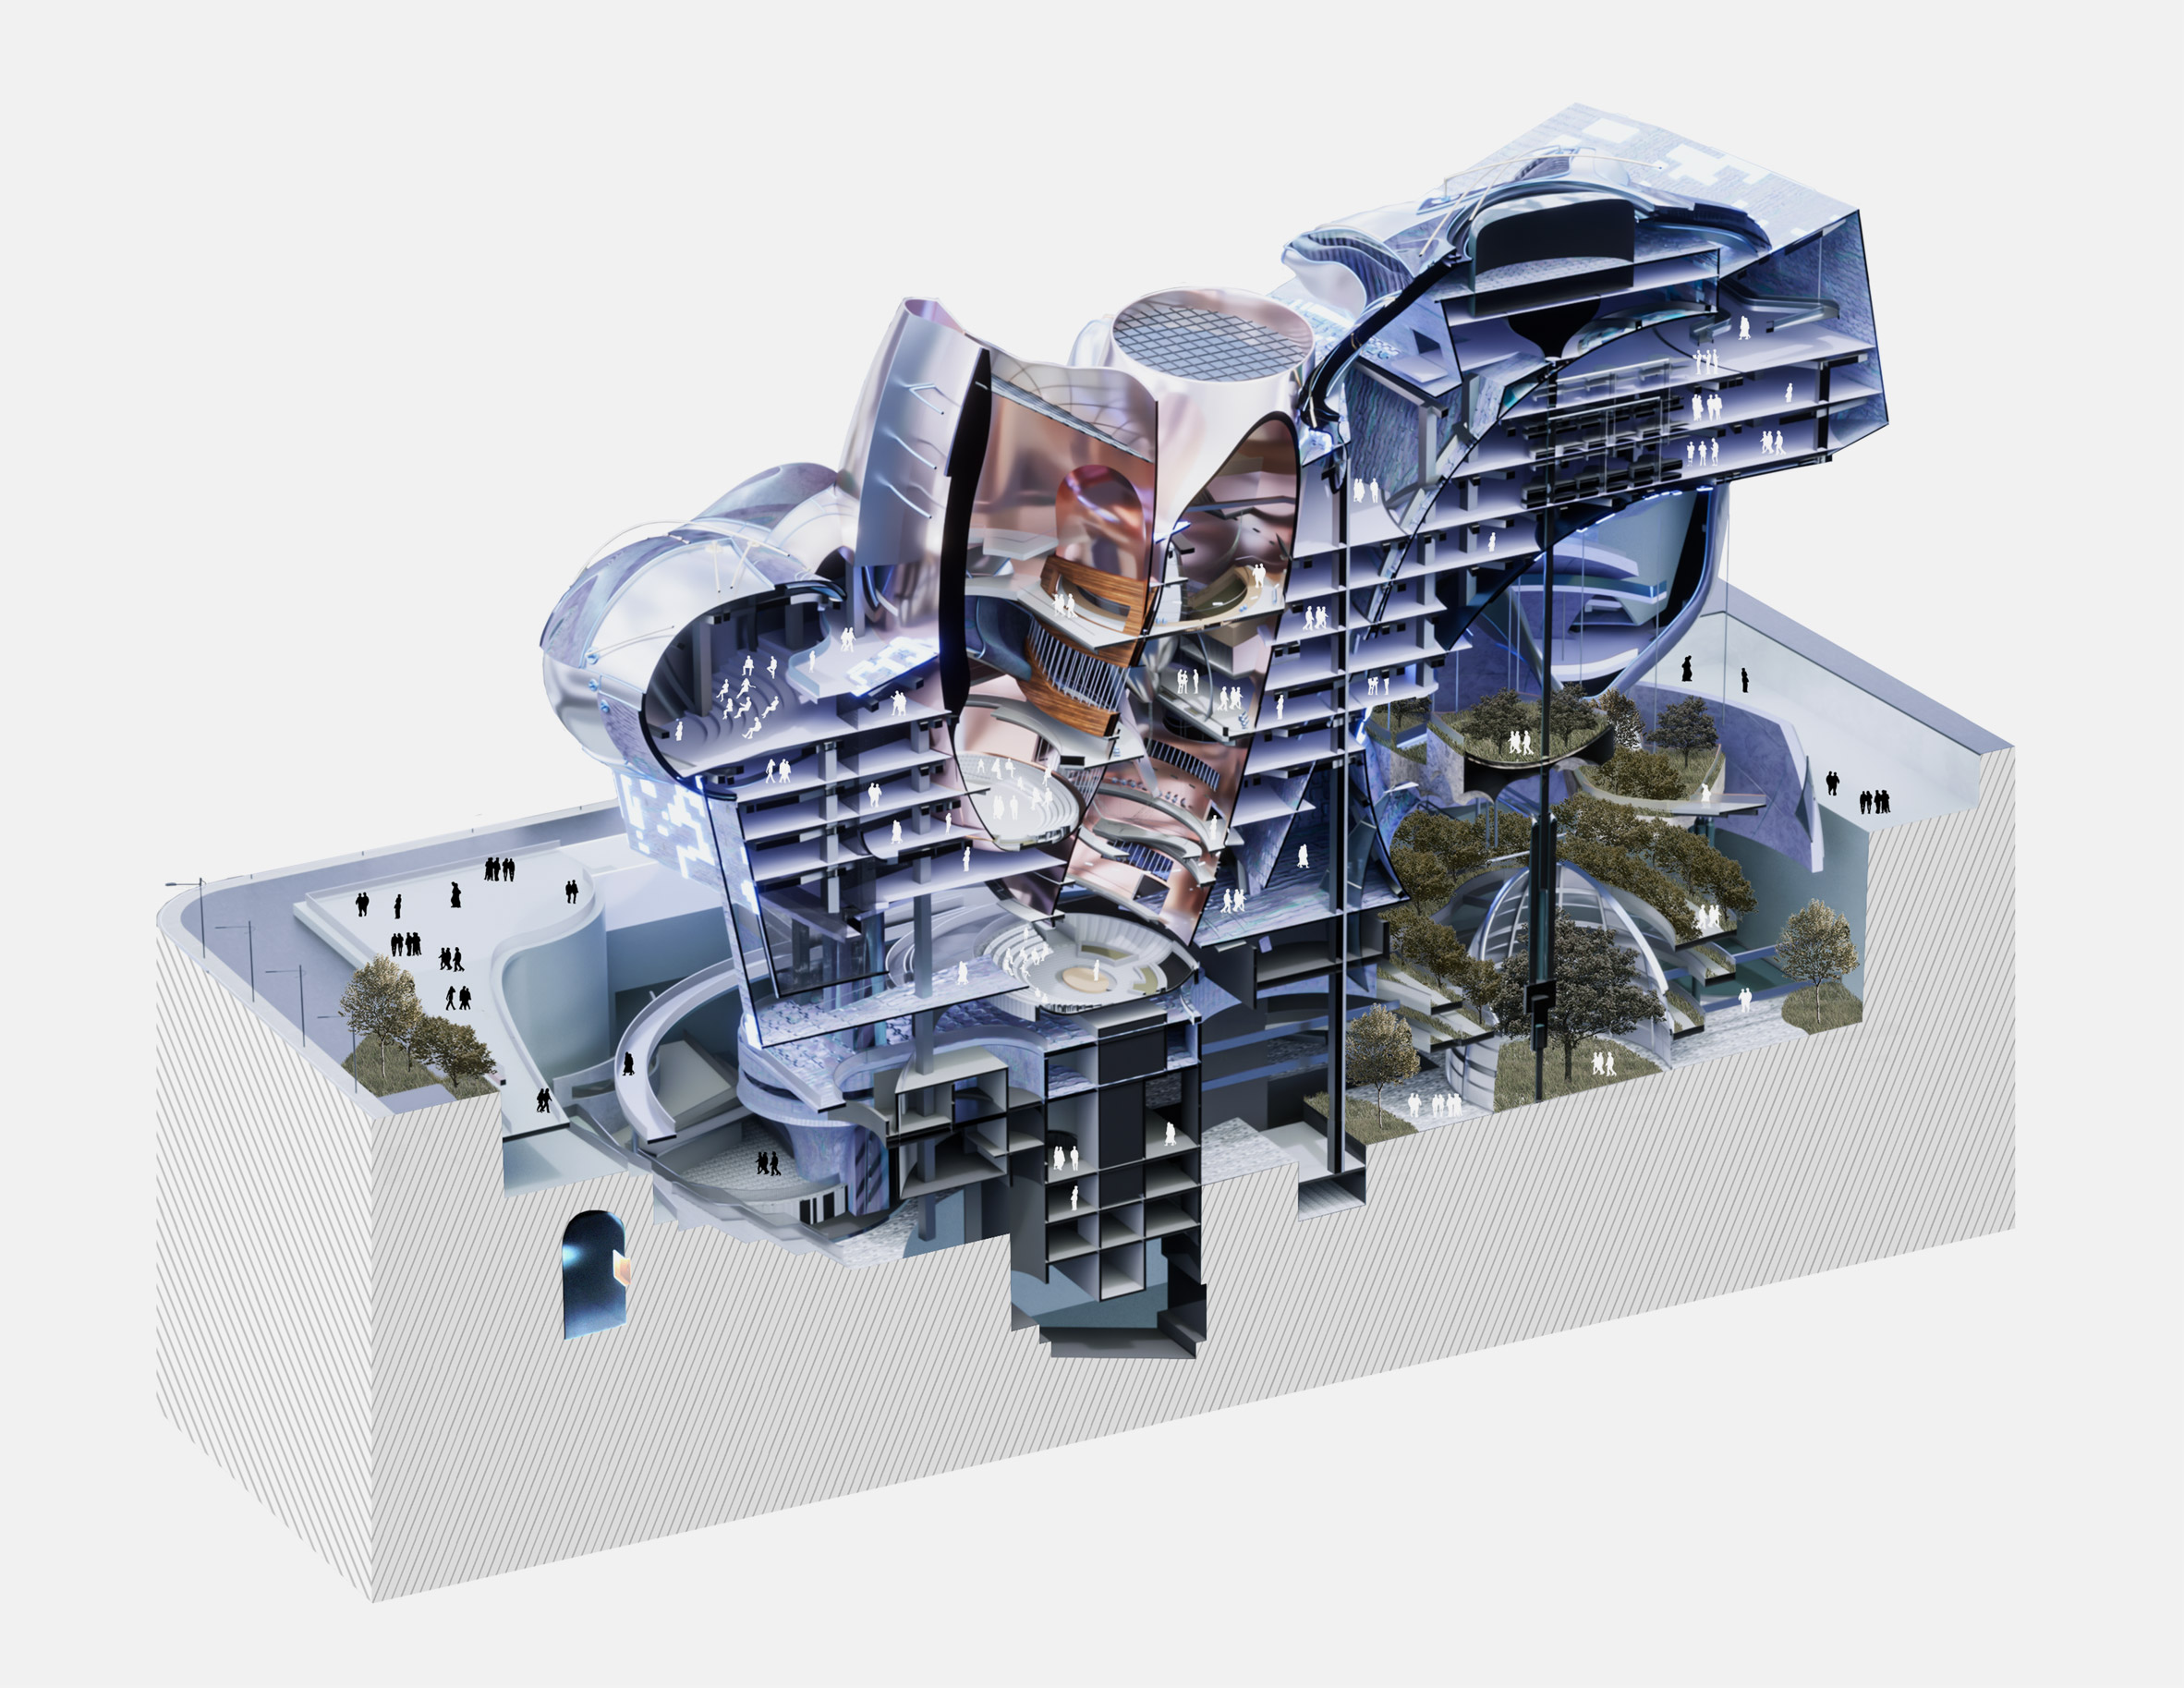 3D sectional model of a large, bulbous purple building